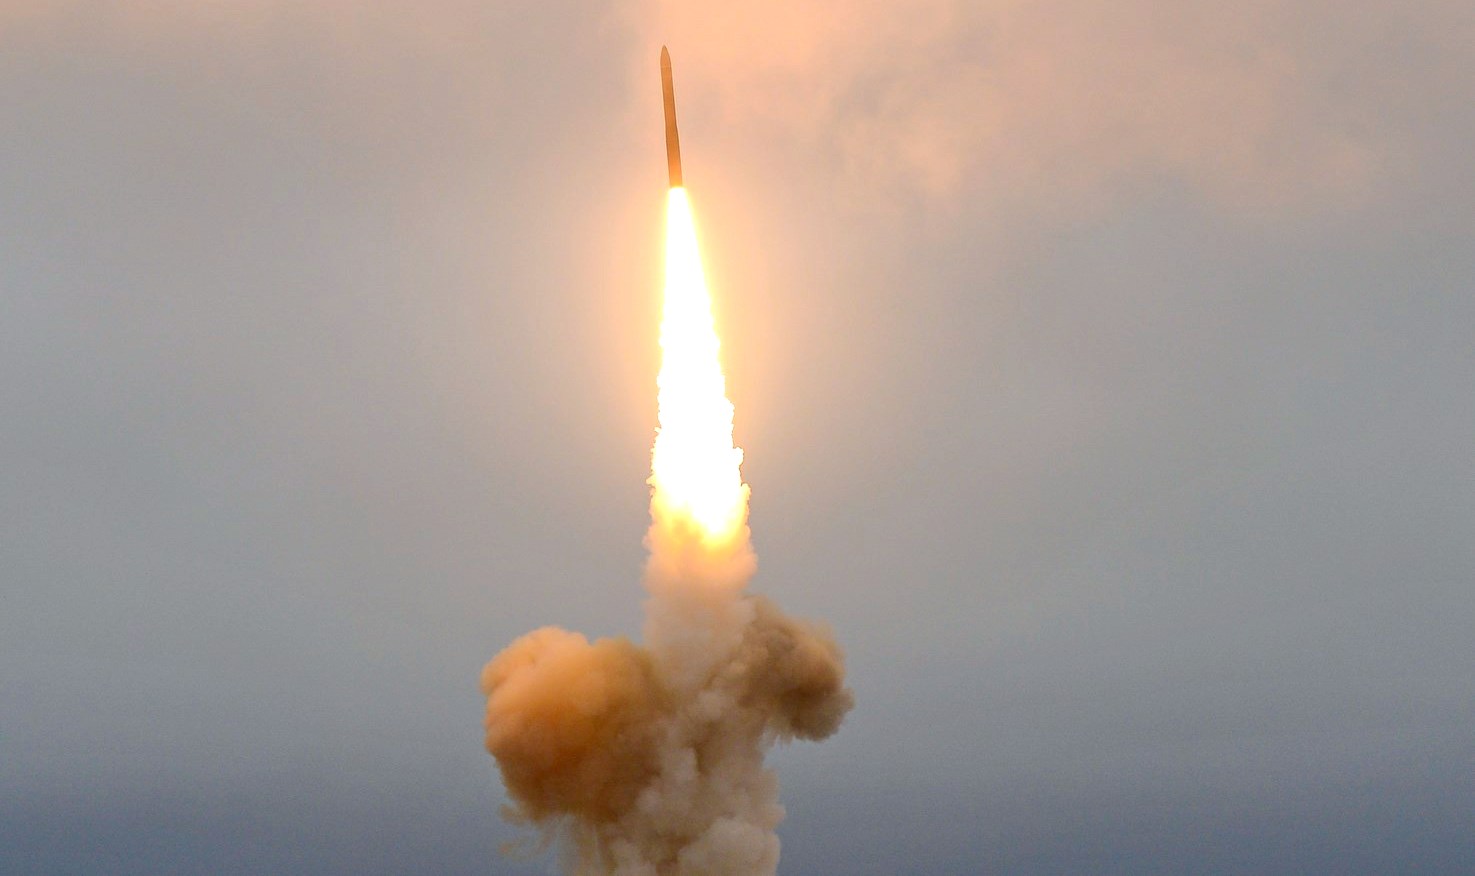 Испытательный пуск баллистической ракеты 5-го поколения РТ-2МП2 «Тополь-М» с космодрома Плесецк 20 апреля 2004 г. Ракета преодолела 11000 км и ее боевая часть попала в заданное целевое поле в нейтральных водах в районе Гавайских островов